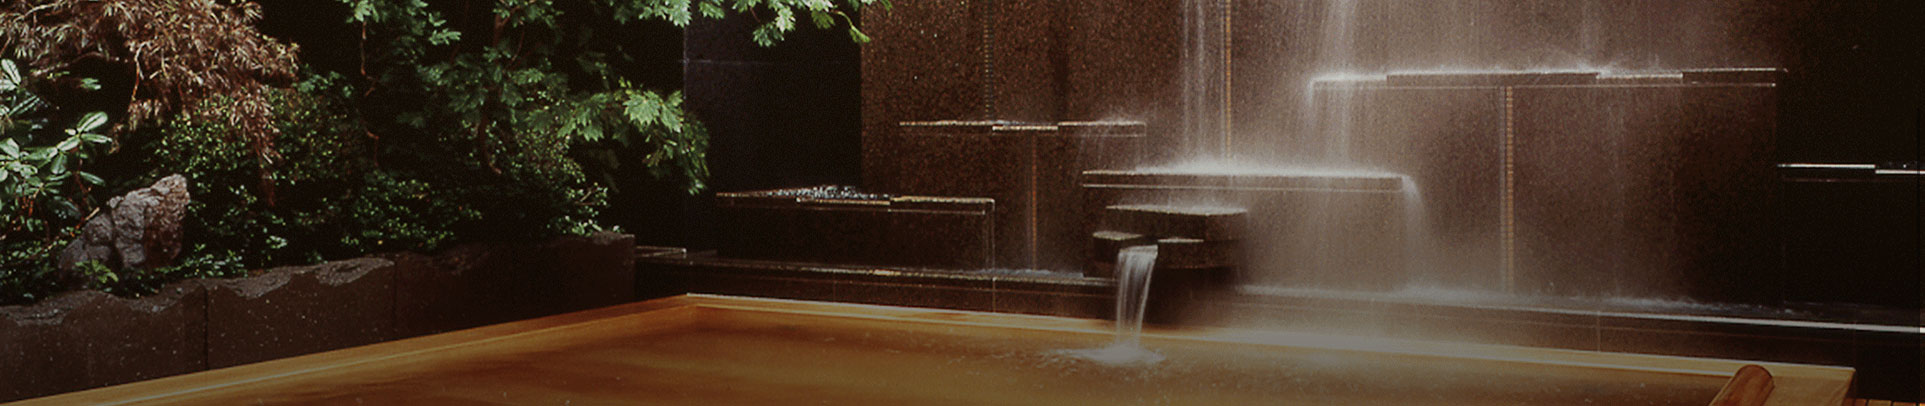 札幌のホテル、温泉ならジャスマックプラザホテル｜すすきのからすぐ、天然温泉、宴会場も充実